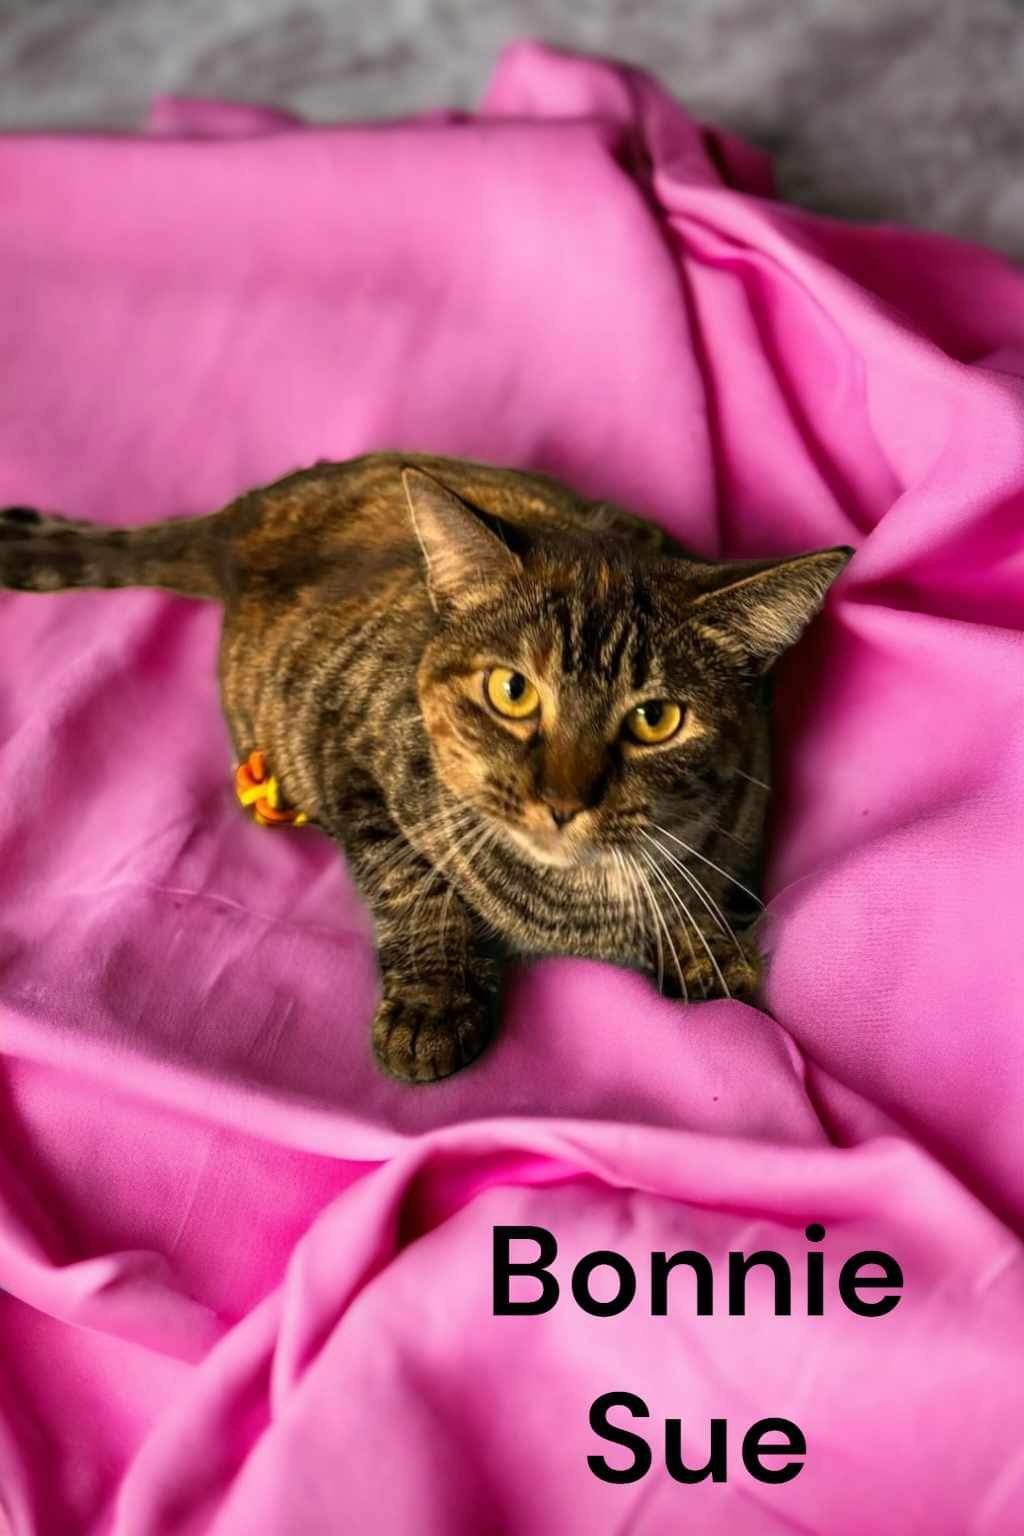 adoptable Cat in Champaign, IL named Bonnie Sue